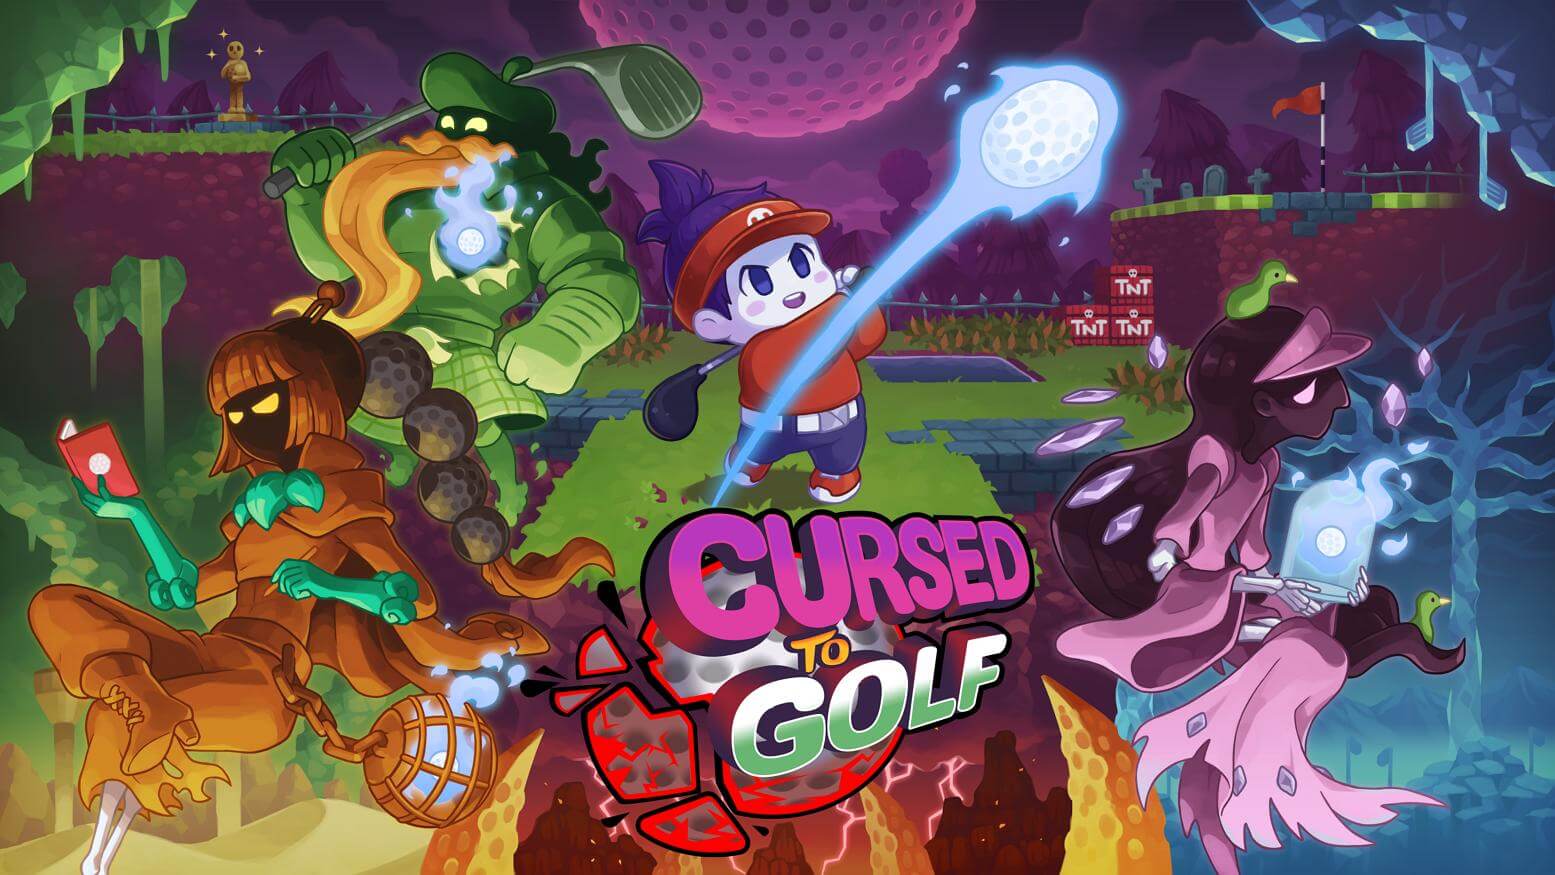 Гольф-рогалик Cursed To Golf получил дату релиза - игра выйдет в августе